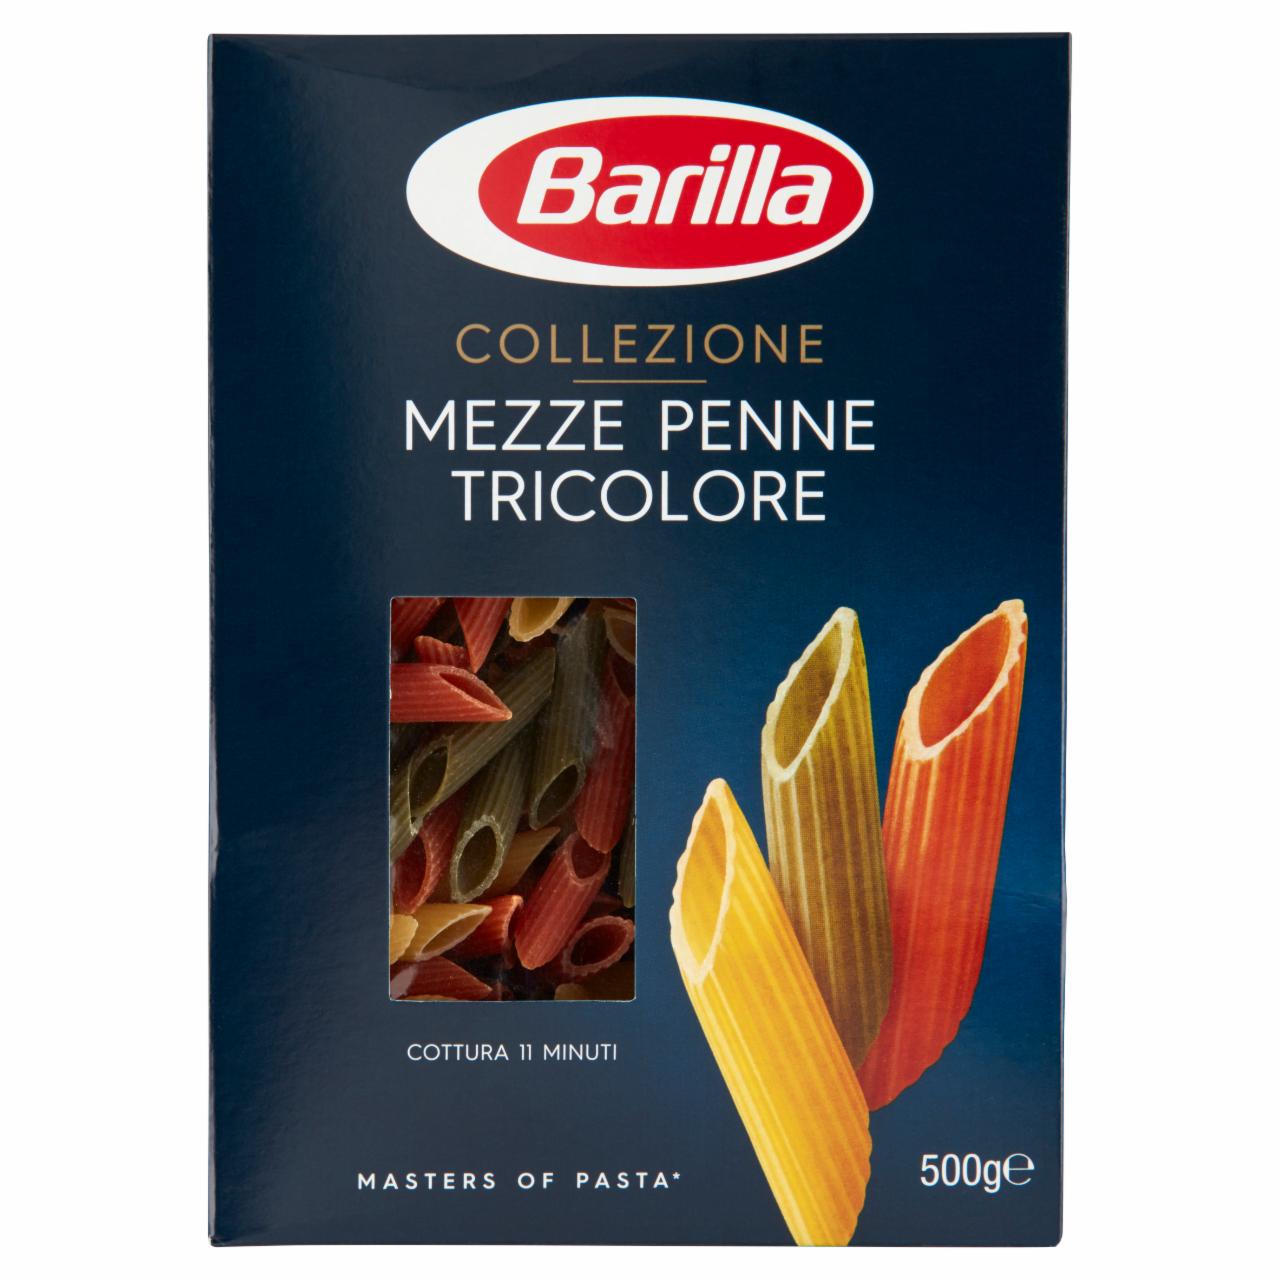 Képek - Barilla Collezione Mezze Penne Tricolore paradicsommal, spenóttal ízesített durum száraztészta 500 g